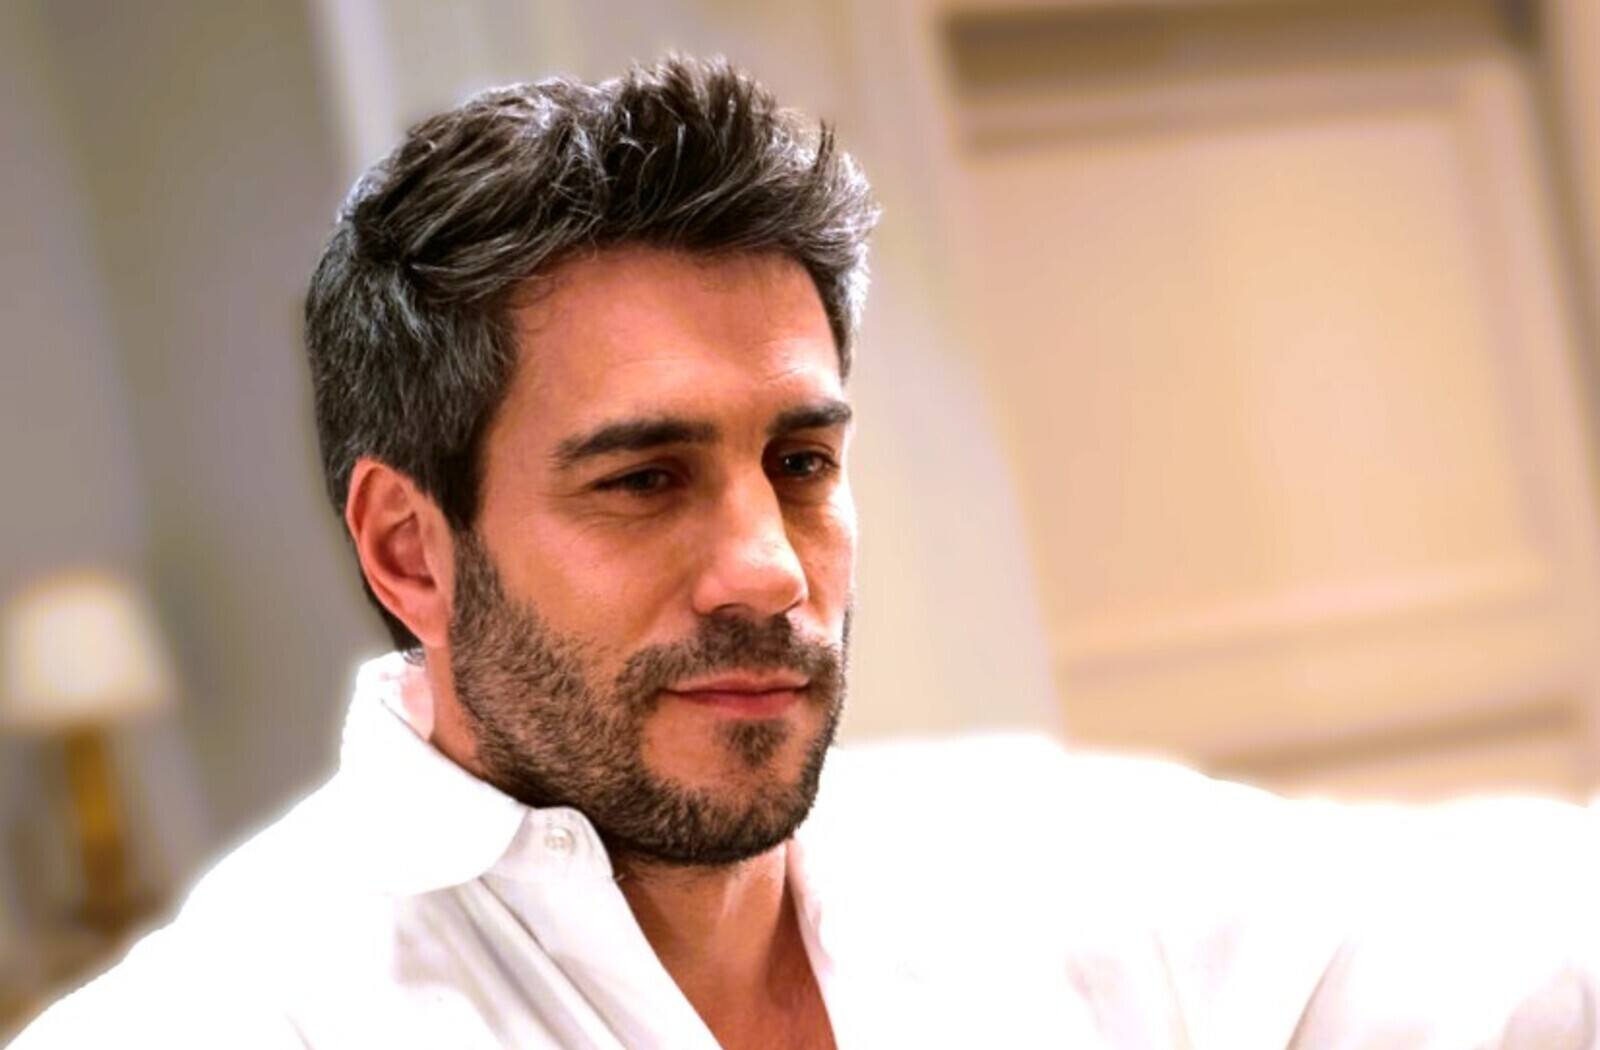 Dani Tatay es el actor que da vida a Andrés de la Reina, protagonista de la serie Sueños de libertad